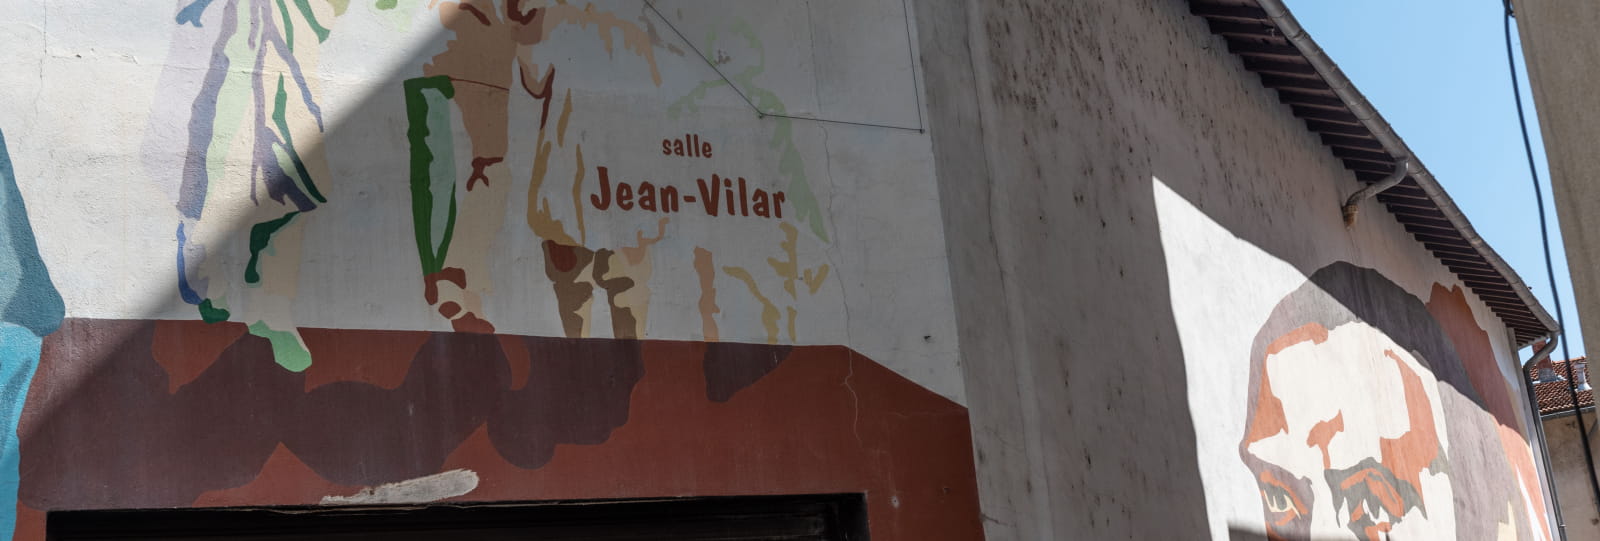 Salle Jean Vilar